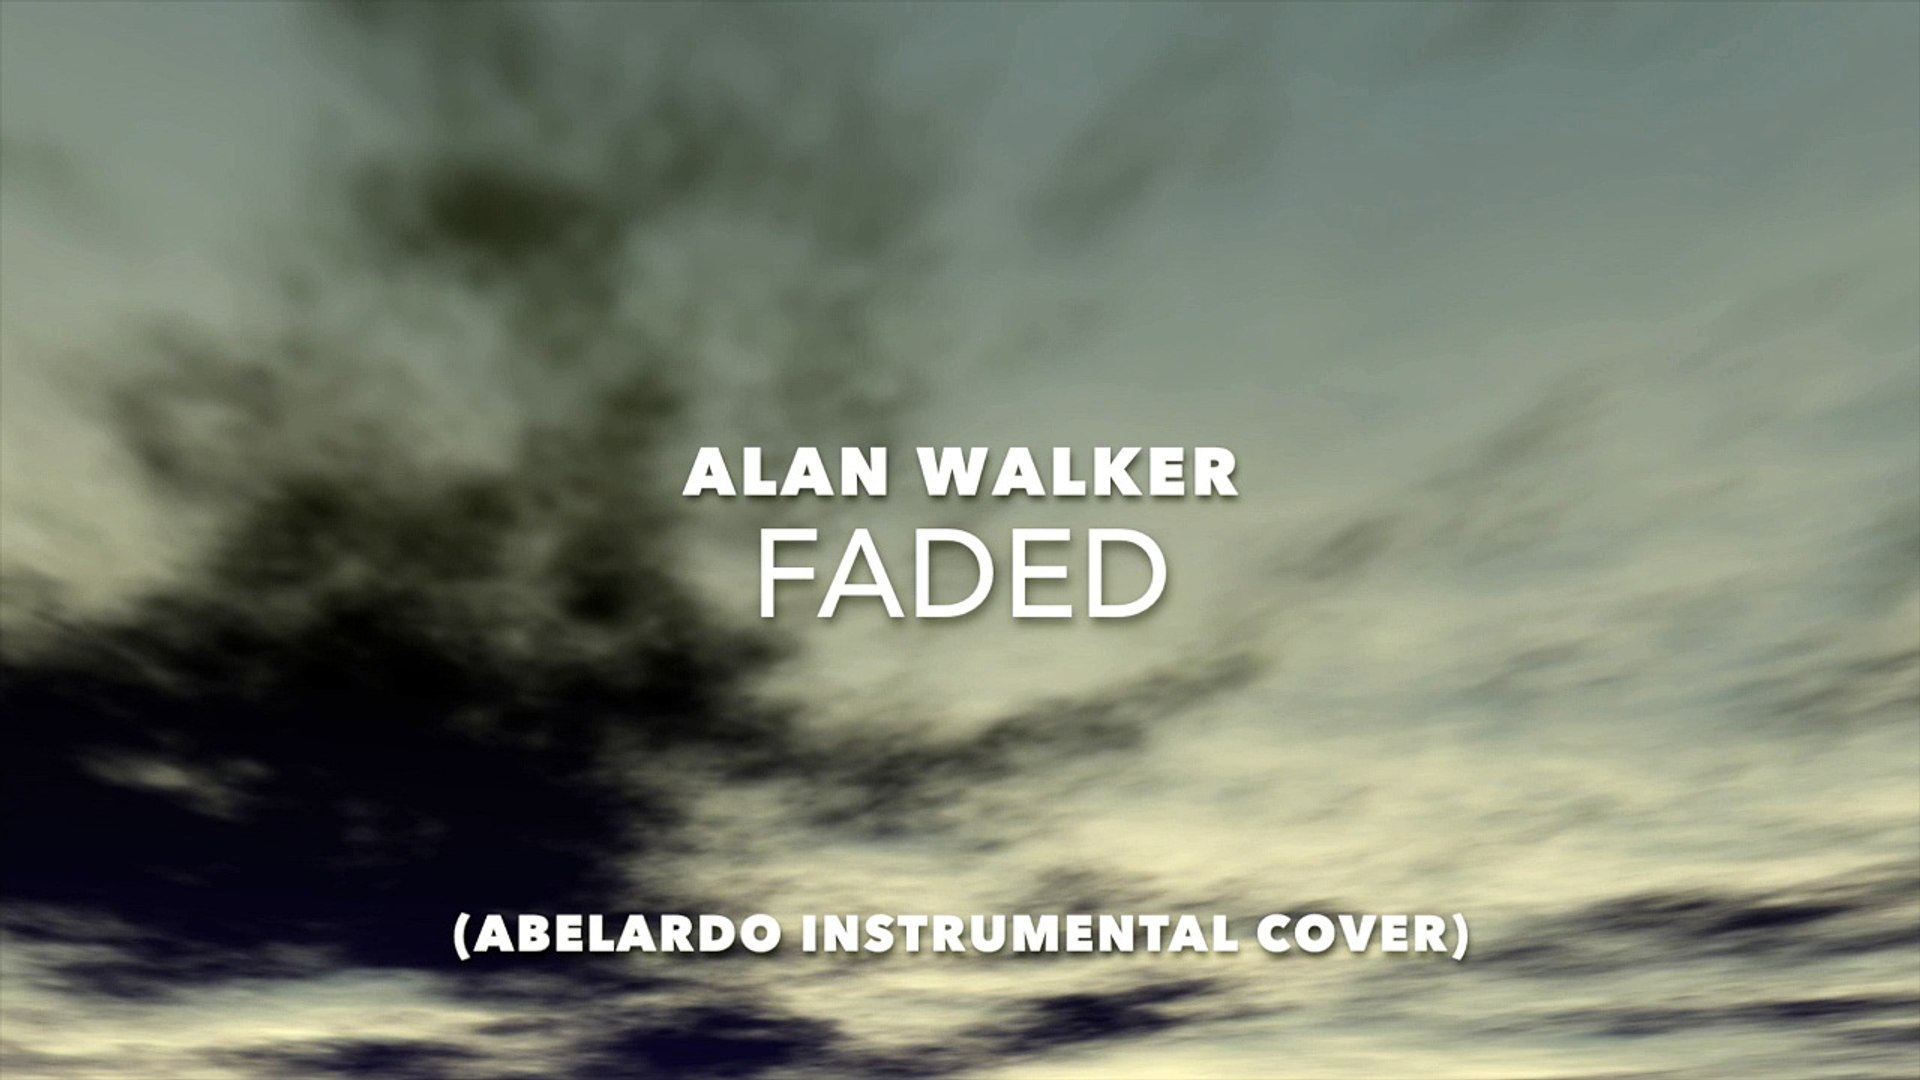 Alan Walker Faded Abelardo Instrumental Cover Video Dailymotion